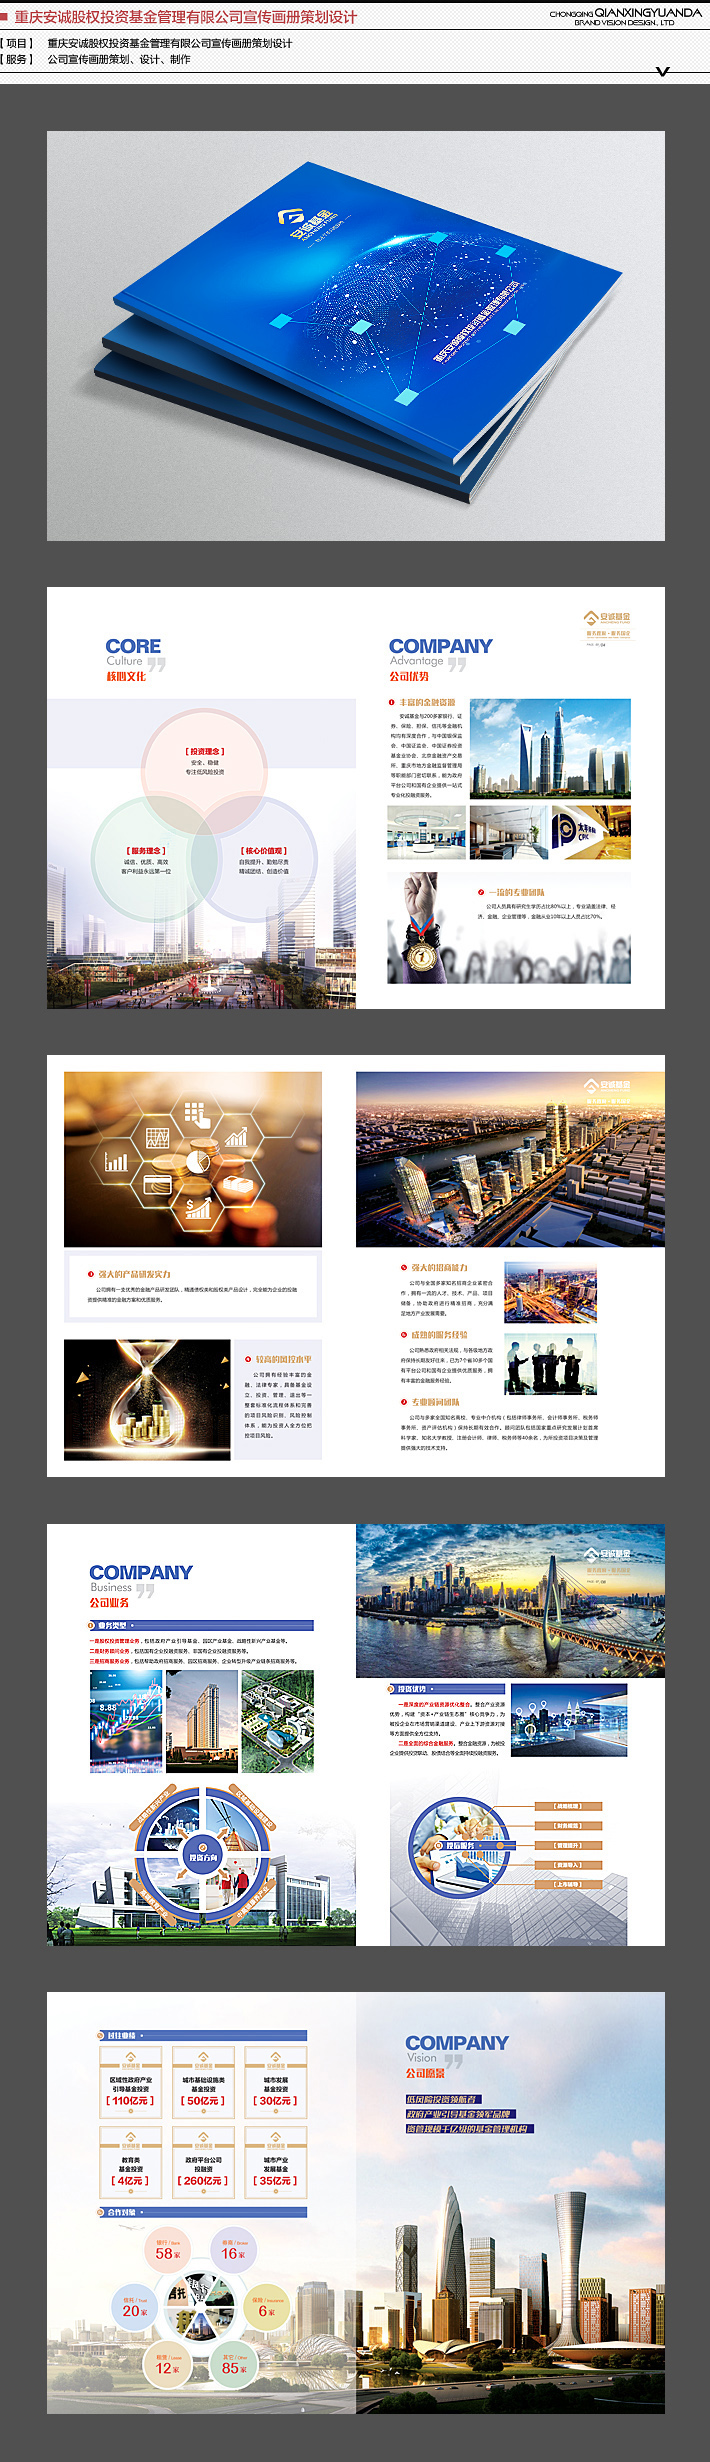 重庆宣传册设计制作公司虔行远达，崇尚优质、专业、系统、综合的制作设计观，砥砺虔行，竭诚为企业公司服务。